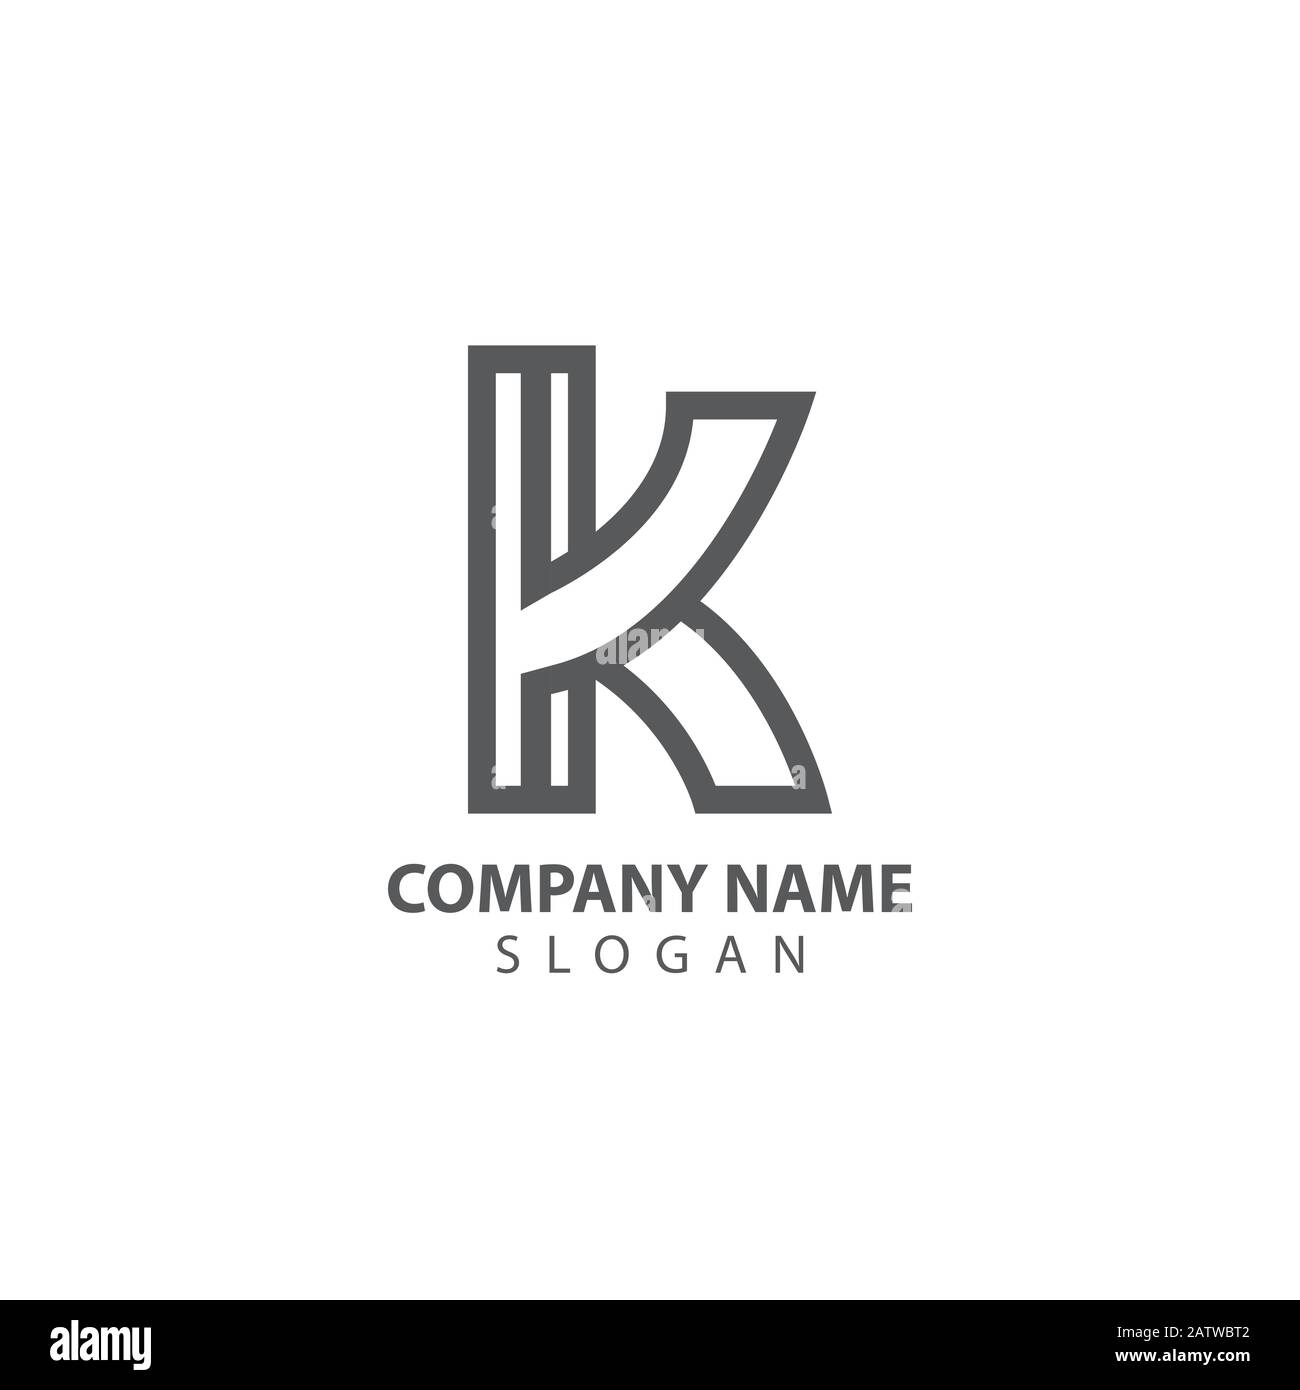 Concetto di logo K Letter. Modello di design creativo Minimal per emblema. Icona elegante universale. Logo Premium Business Finance. Simbolo Alfabetico Grafico Per Illustrazione Vettoriale